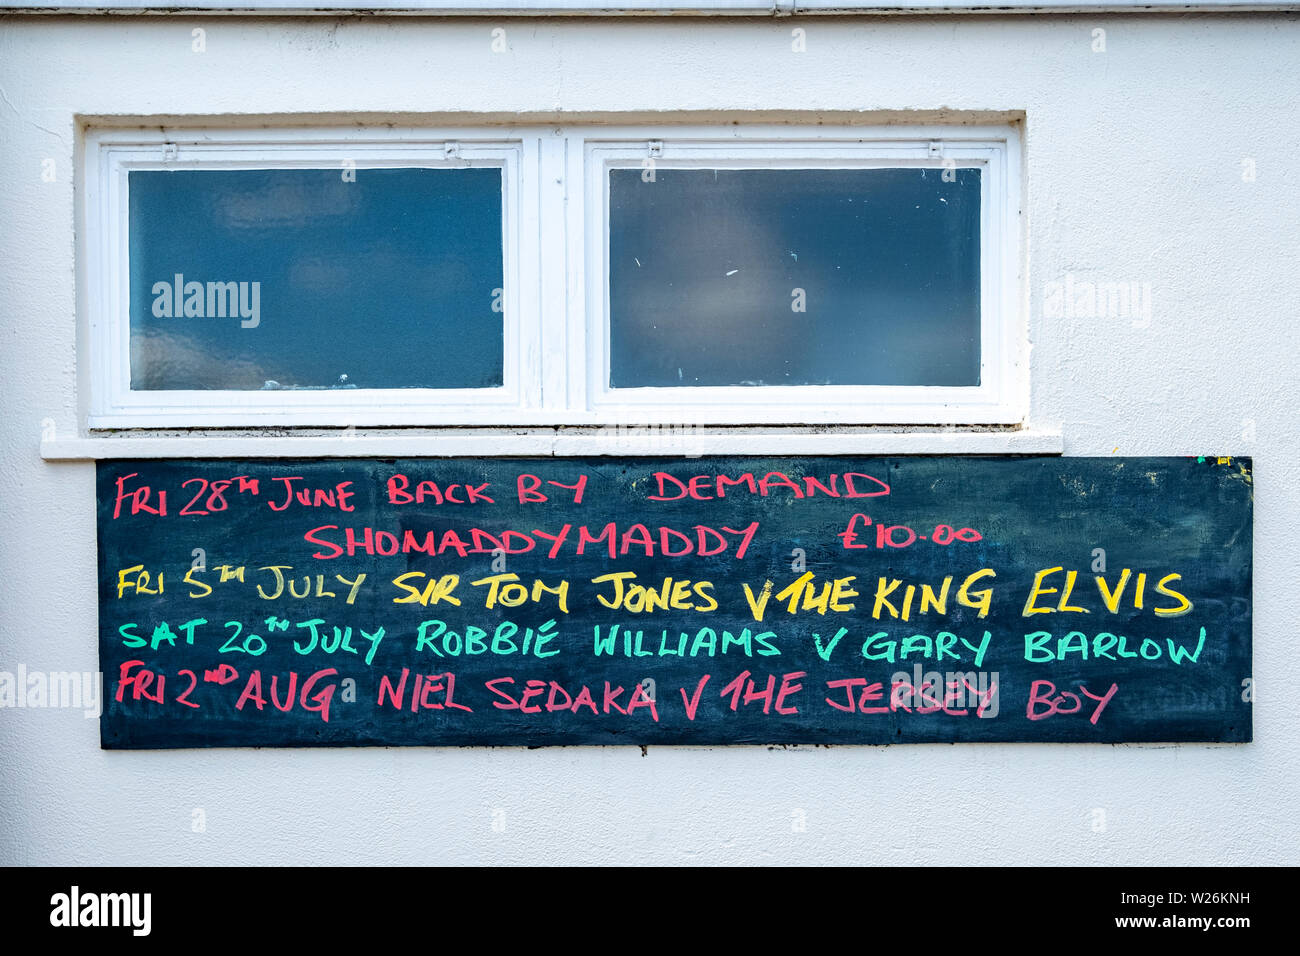 Un trabajo típico club del hombre anuncio para el entretenimiento de fin de semana en la pared exterior en Crewe Coppenhall UK Foto de stock